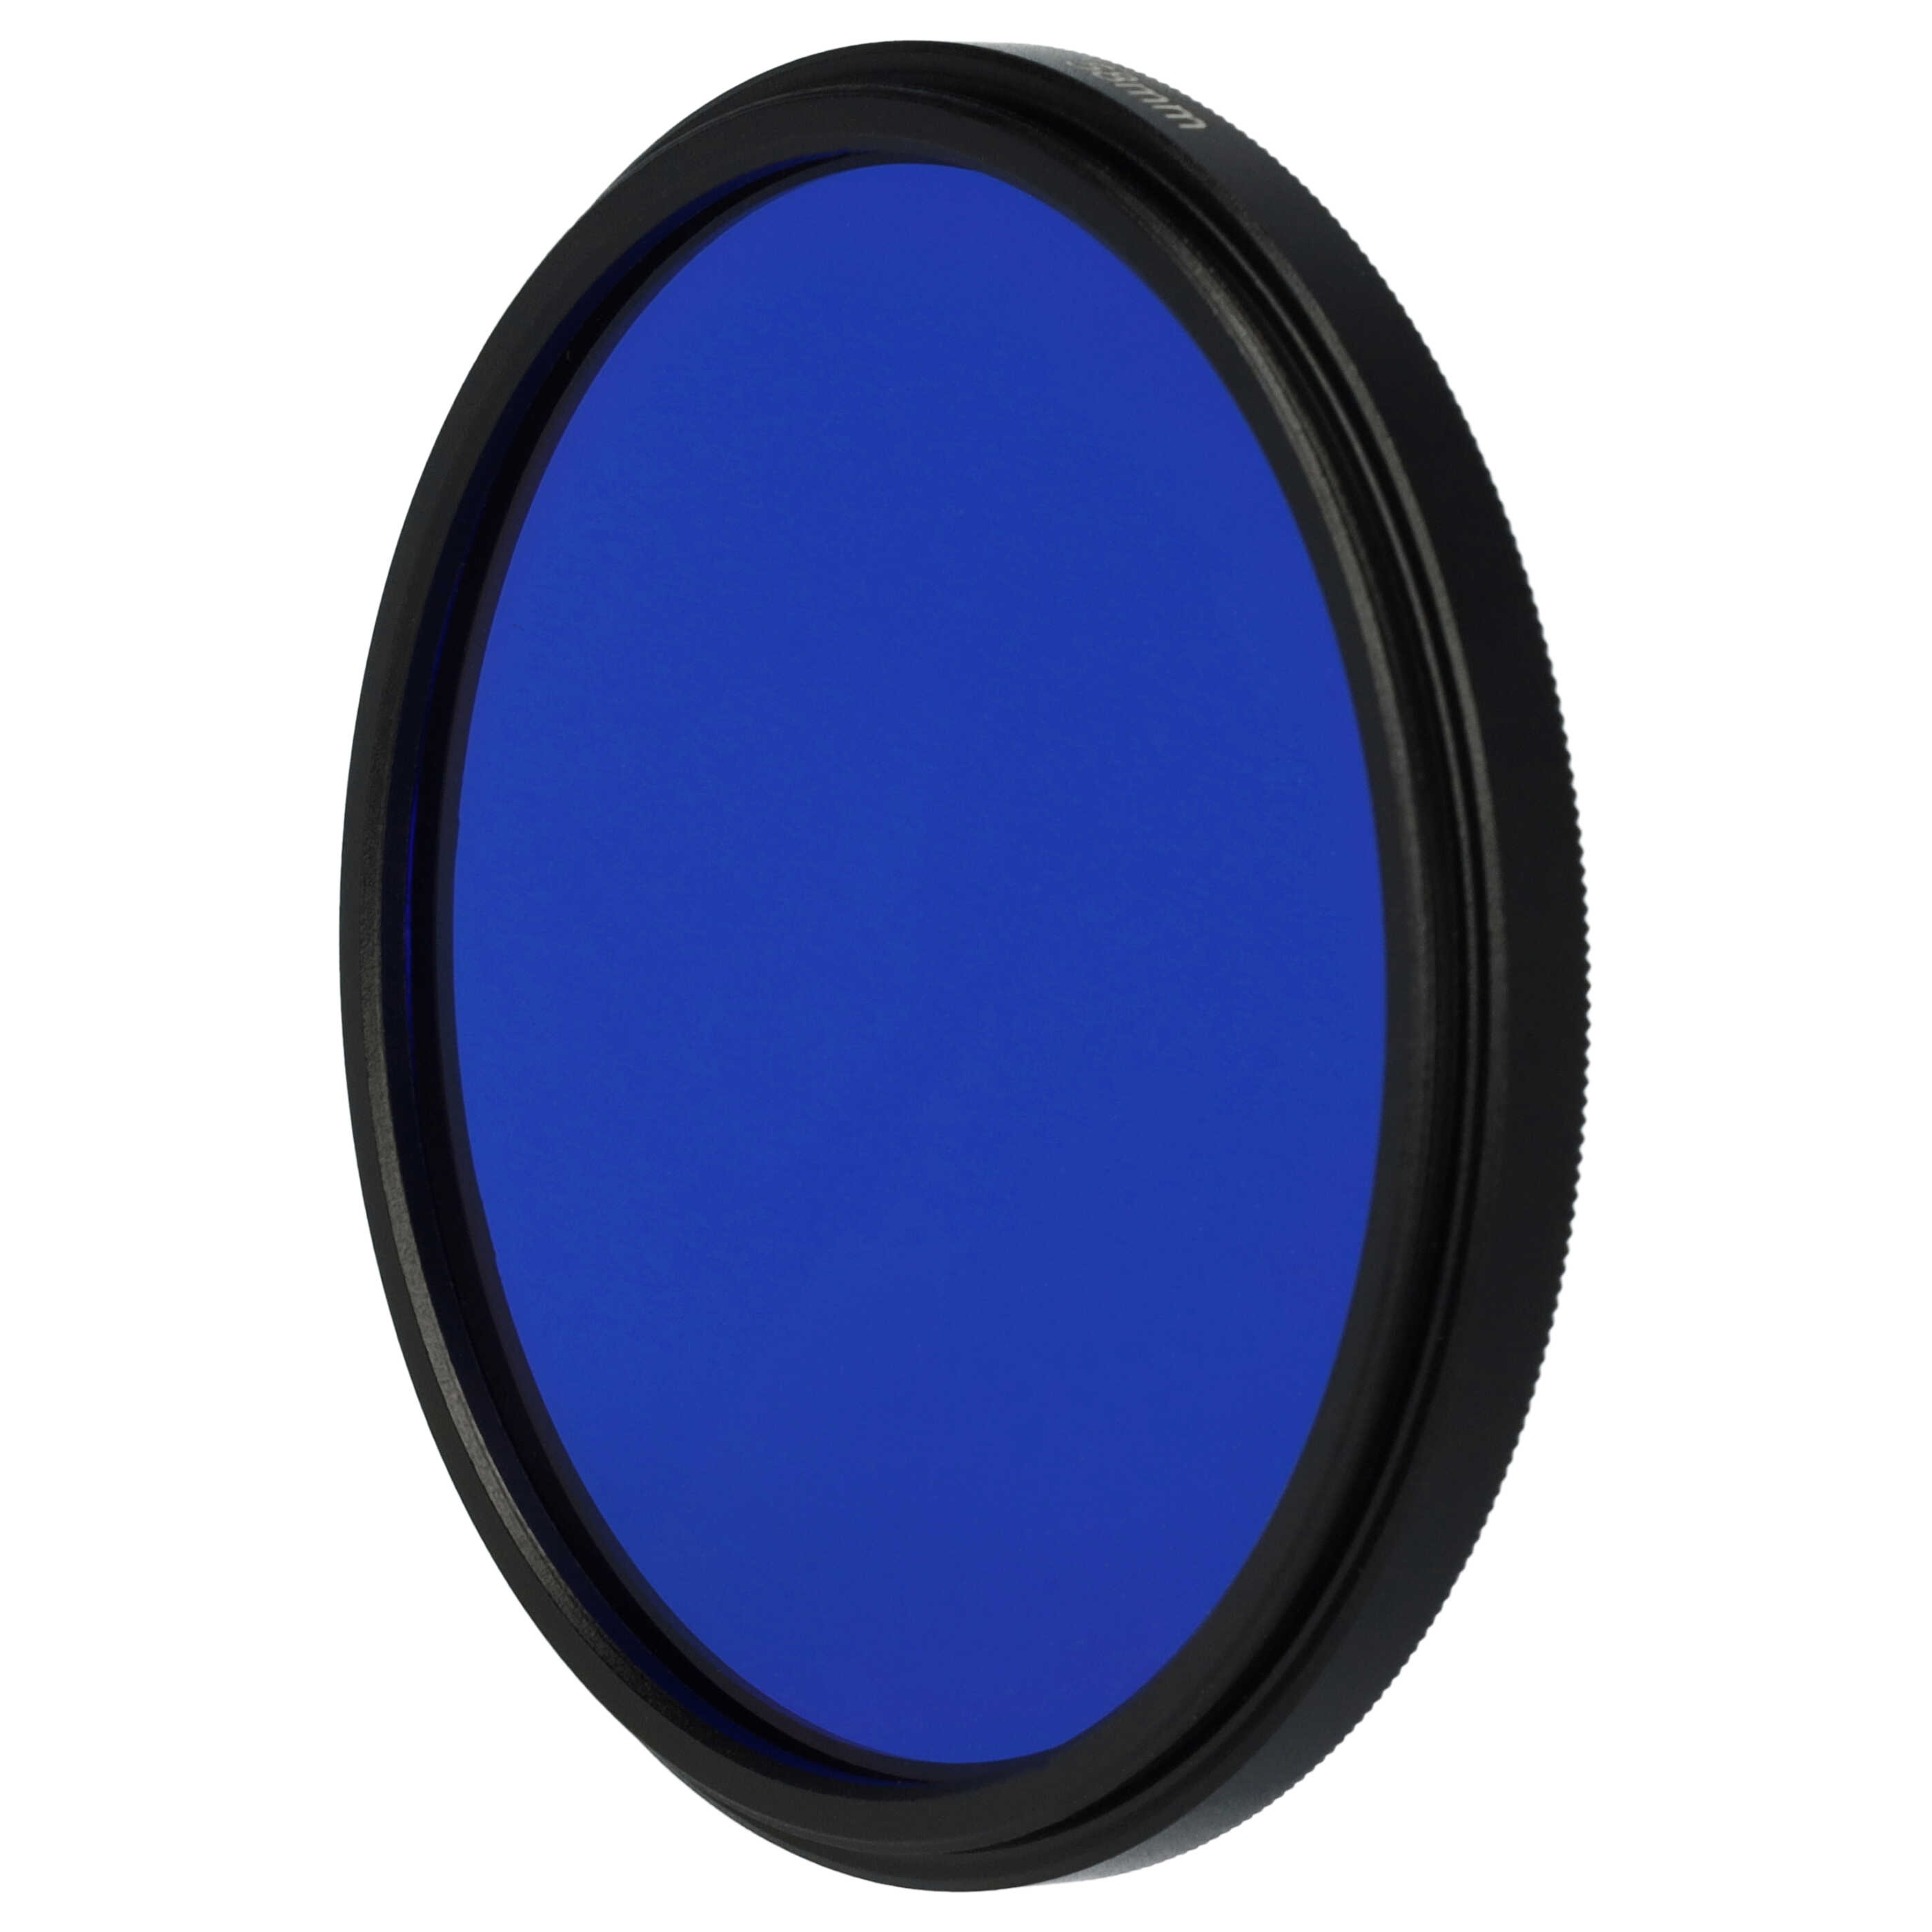 Filtro de color para objetivo de cámara con rosca de filtro de 58 mm - Filtro azul